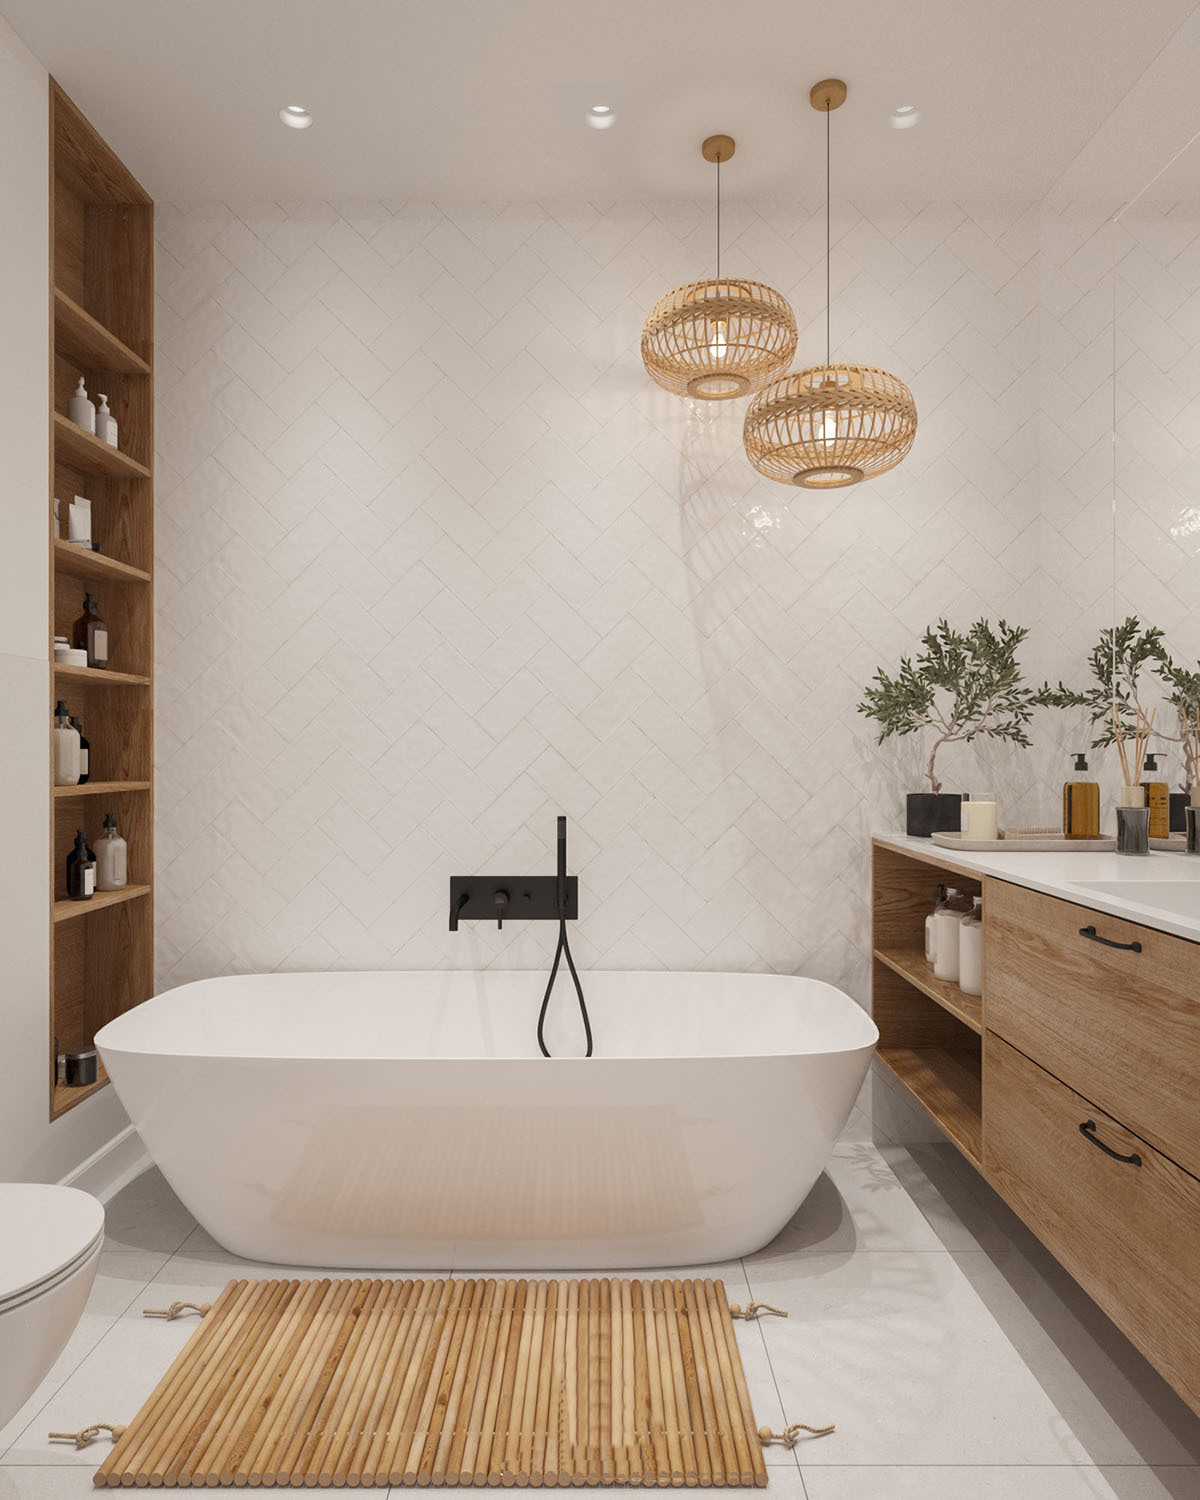 Egyedi tervezésű fürdőszobai bútorok a legjobb térkihasználásért